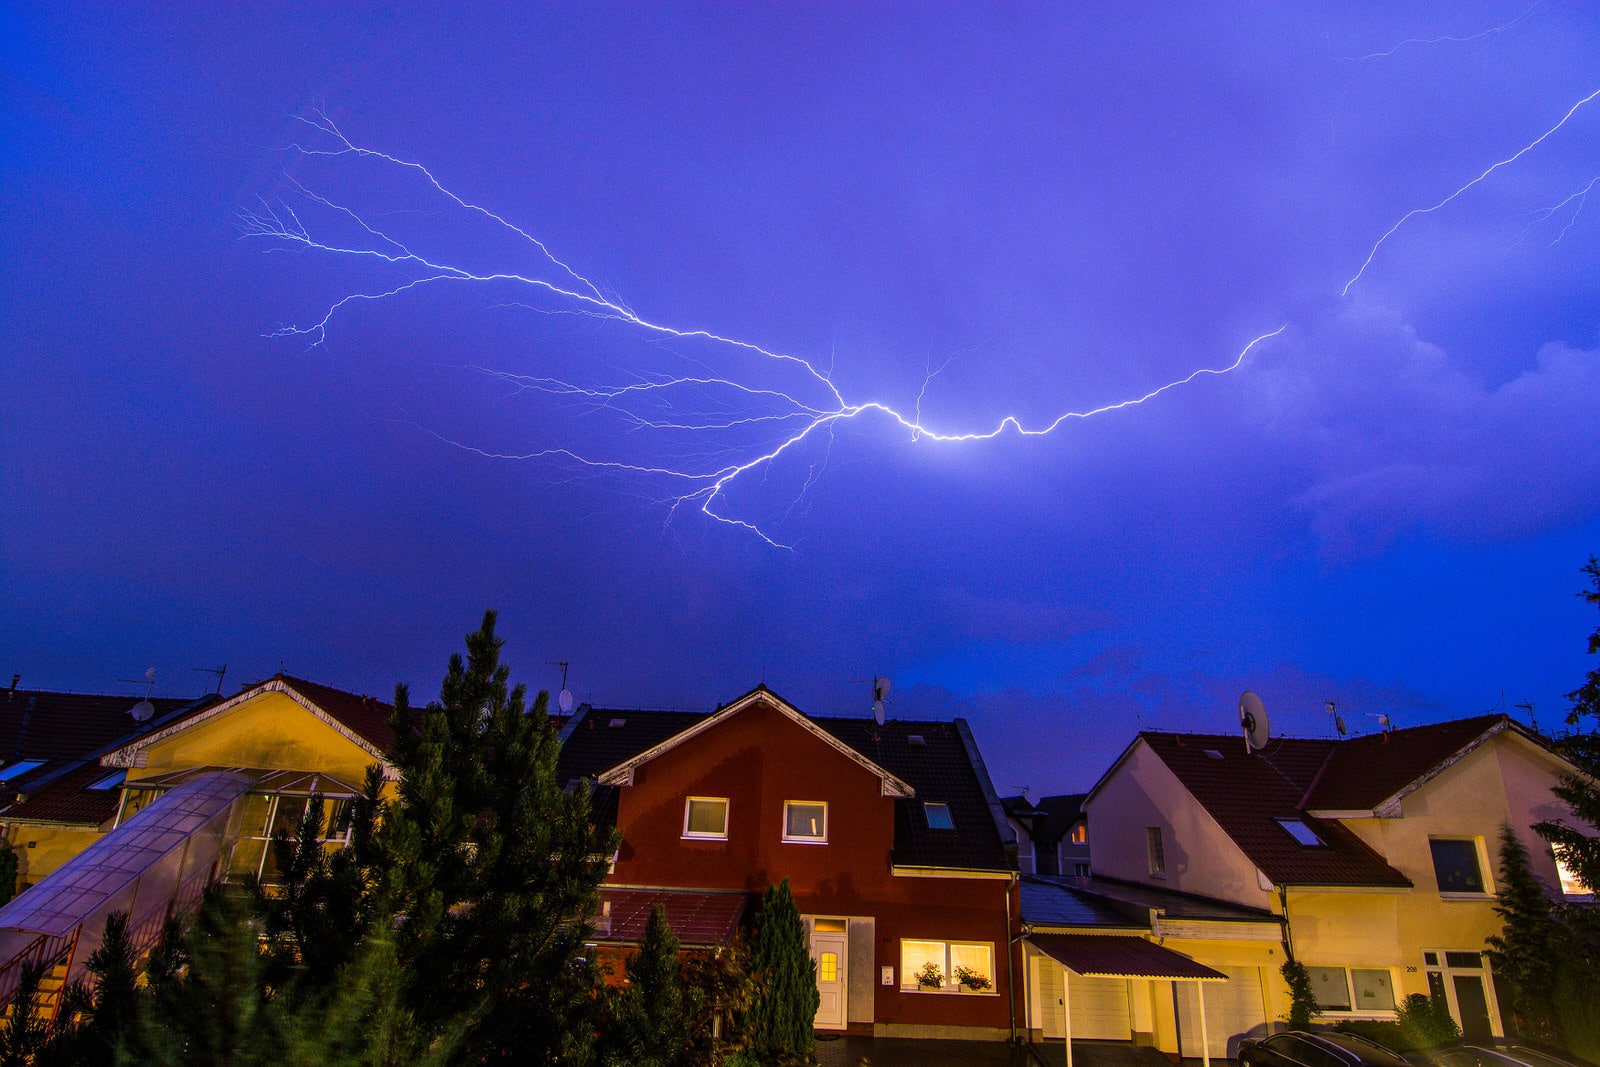 Blitzeinschlag im Haus: Was passiert, wenn der Blitz einschlägt?